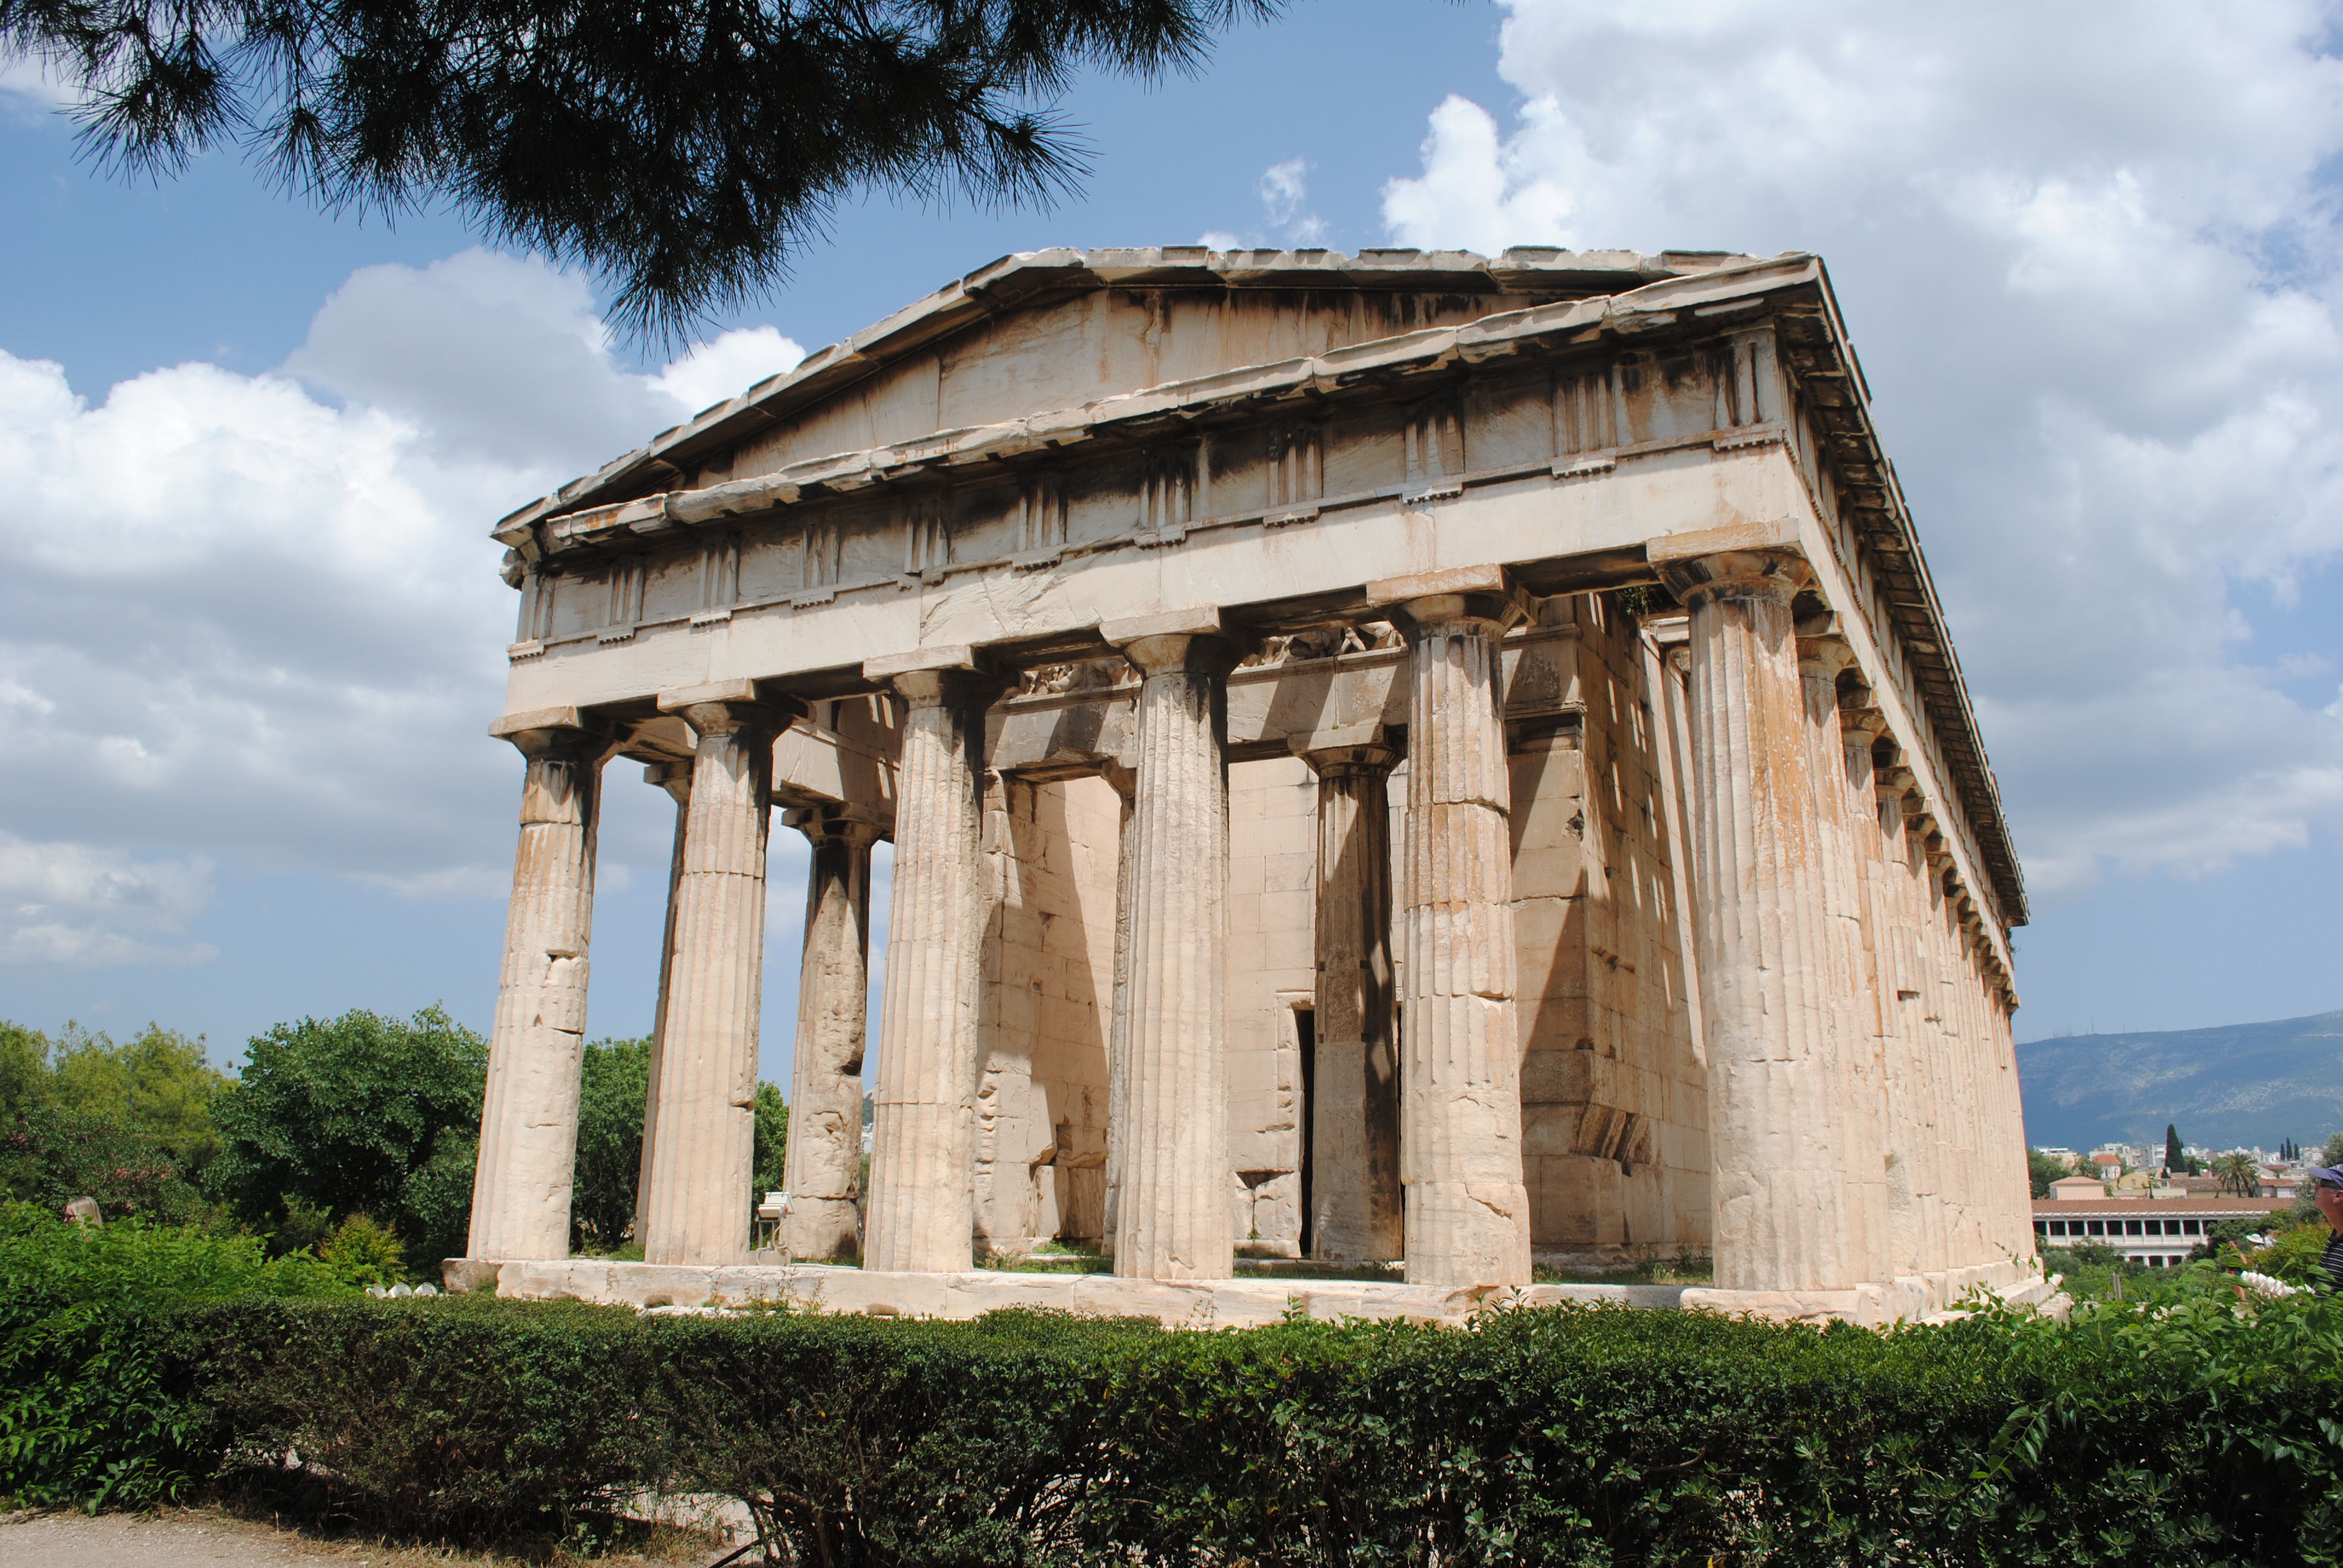 Ancient Agora in Athens, Greece